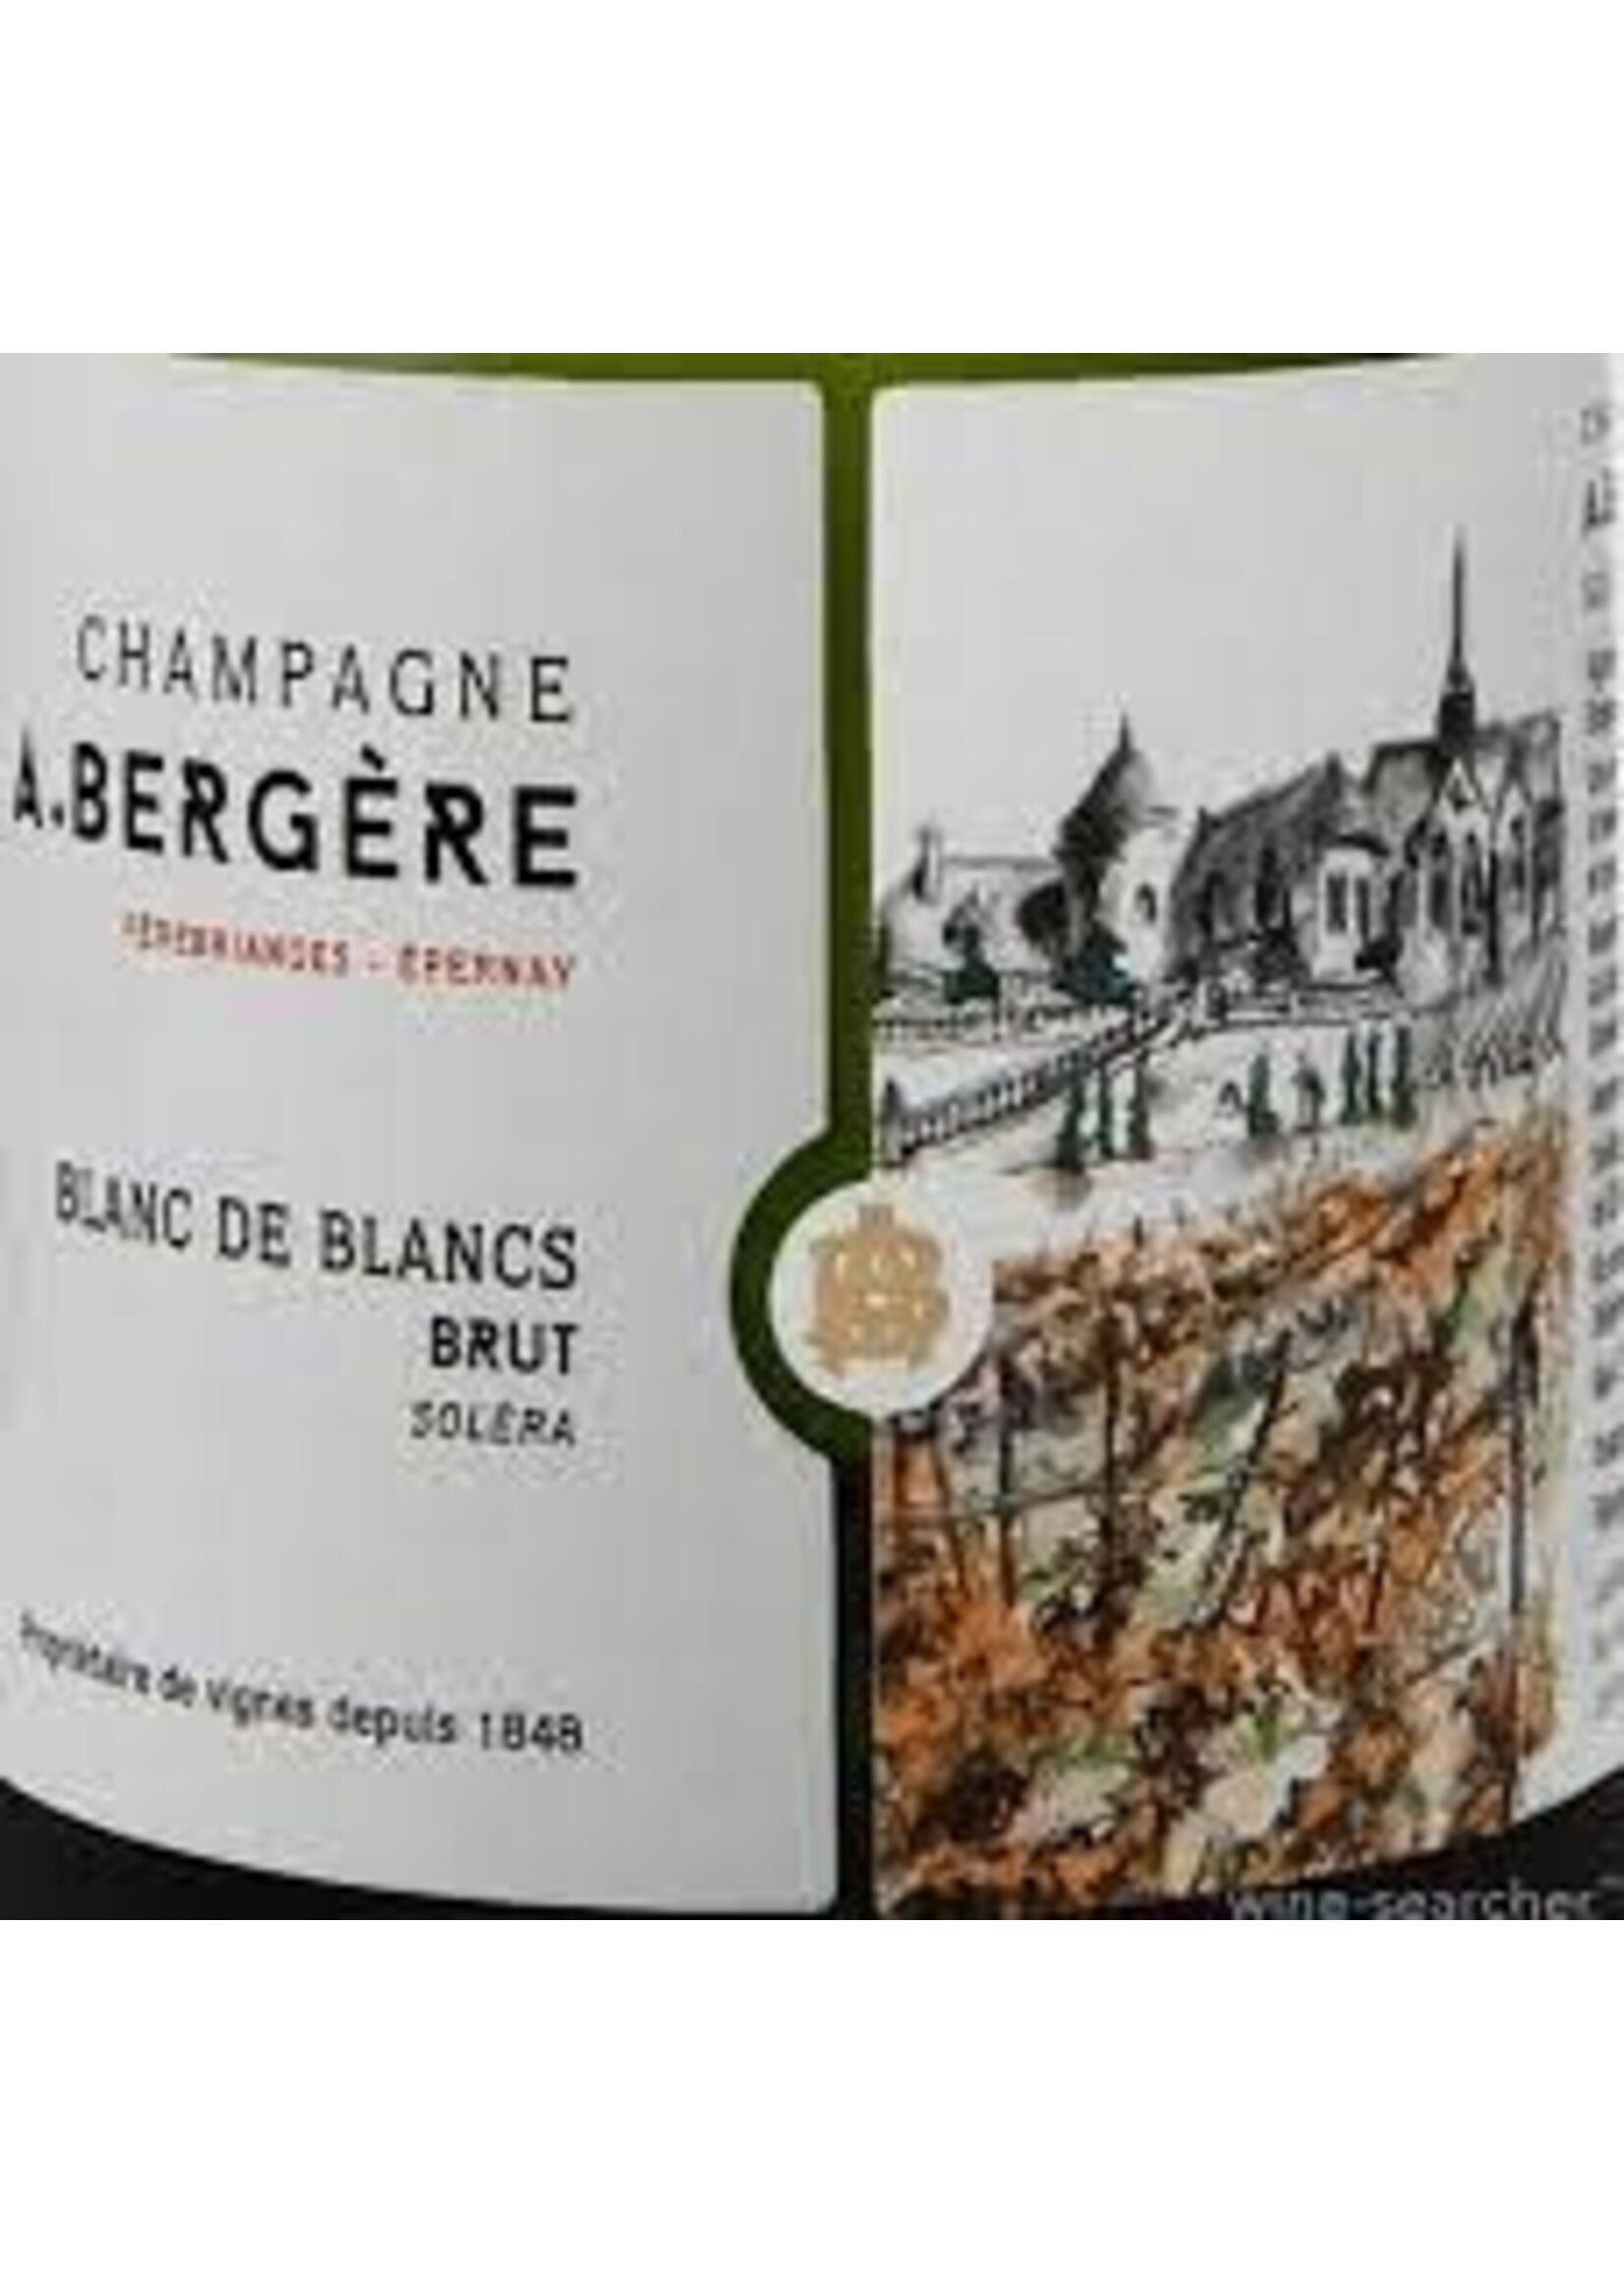 A. Bergere Champagne 'Solera' Blanc de Blancs Brut 750ml